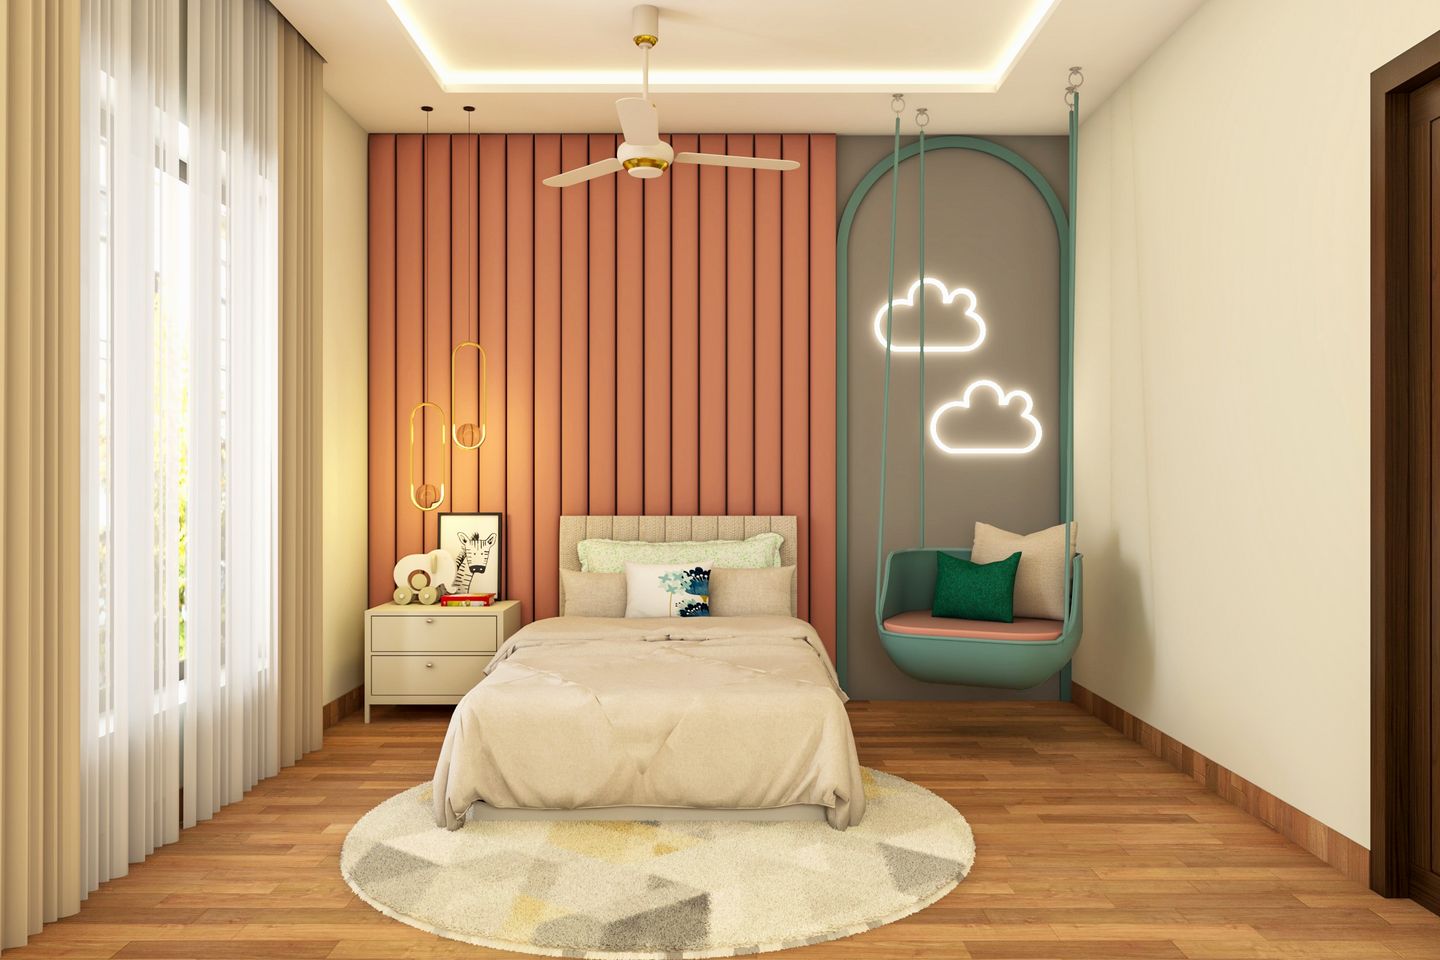 Kids' Bedroom Design with Cloud Shaped Lights - Livspace